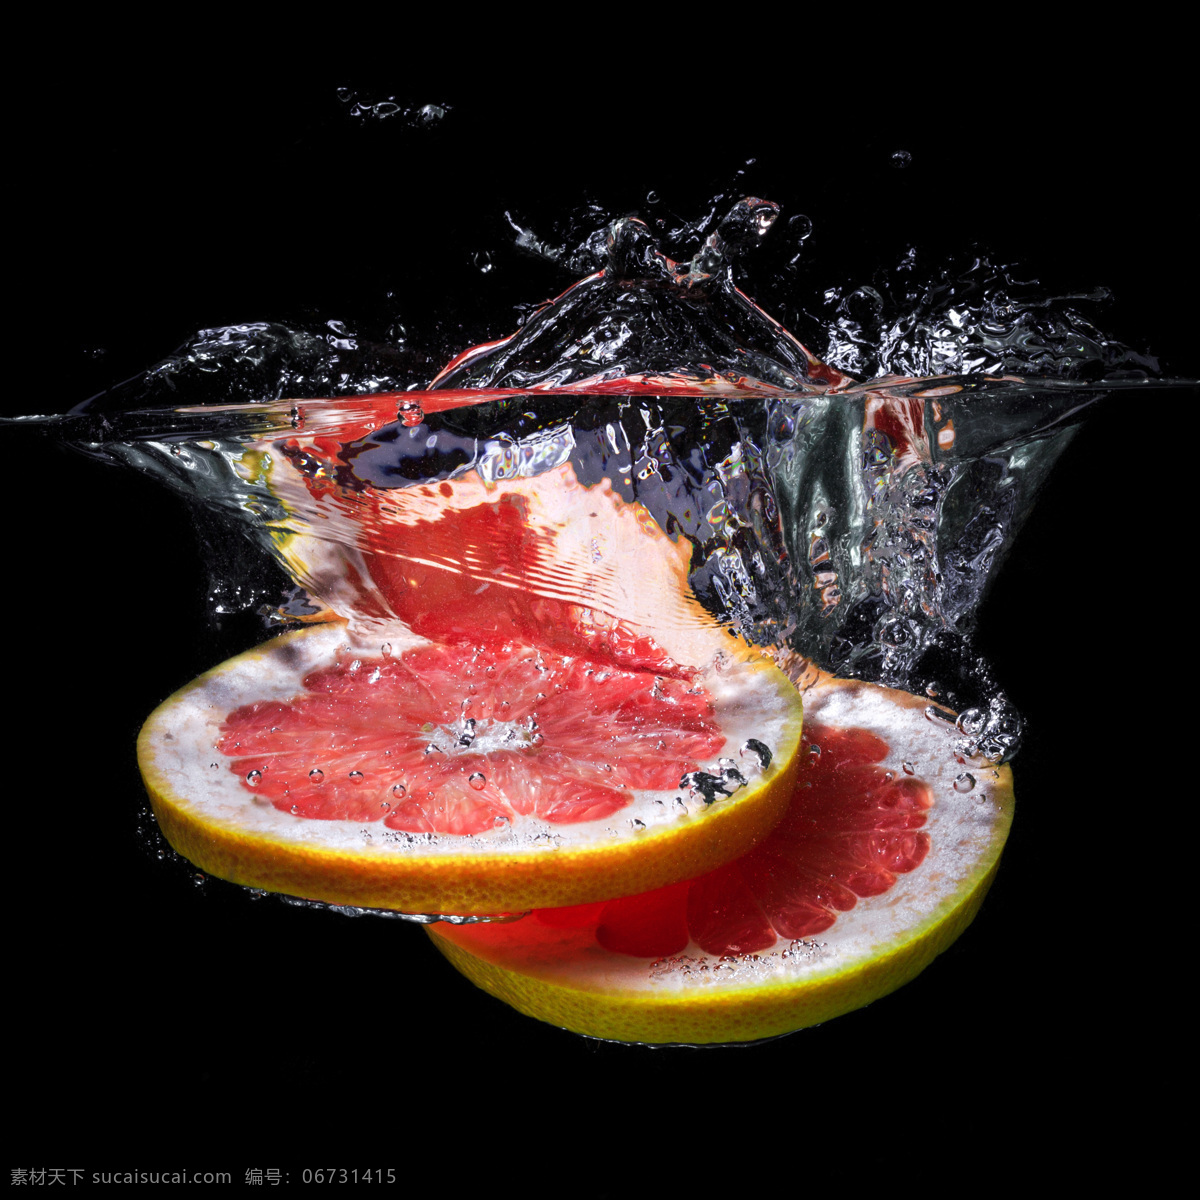 掉 入 水中 橙子 进水 中 水果 落入 新鲜水果 动感水花 溅起的水花 飞溅的水花 蔬菜图片 餐饮美食